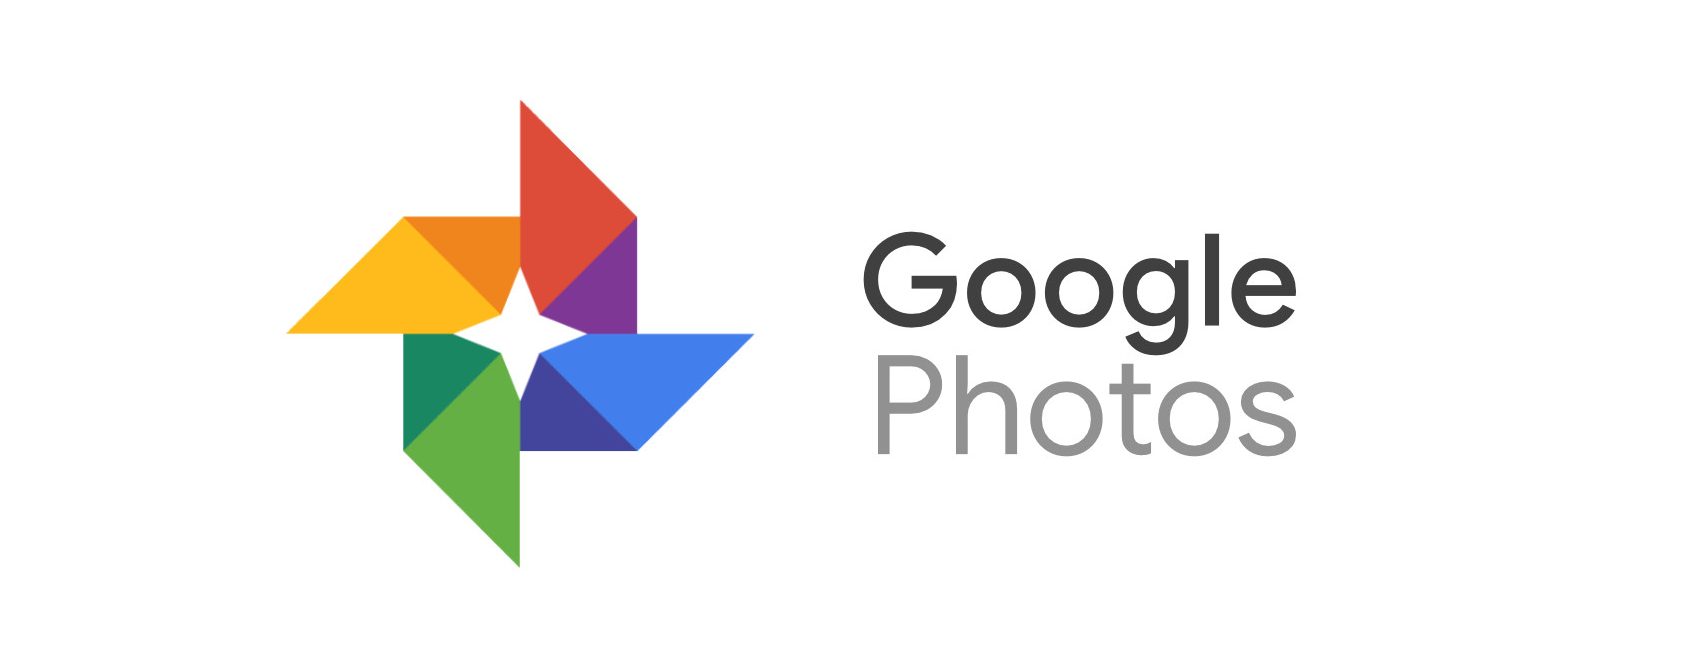 Služba předplatného tiskové řady Google Photos Premium byla obnovena, aby používala ML algoritmy k výběru 10 nejlepších obrázků za měsíc